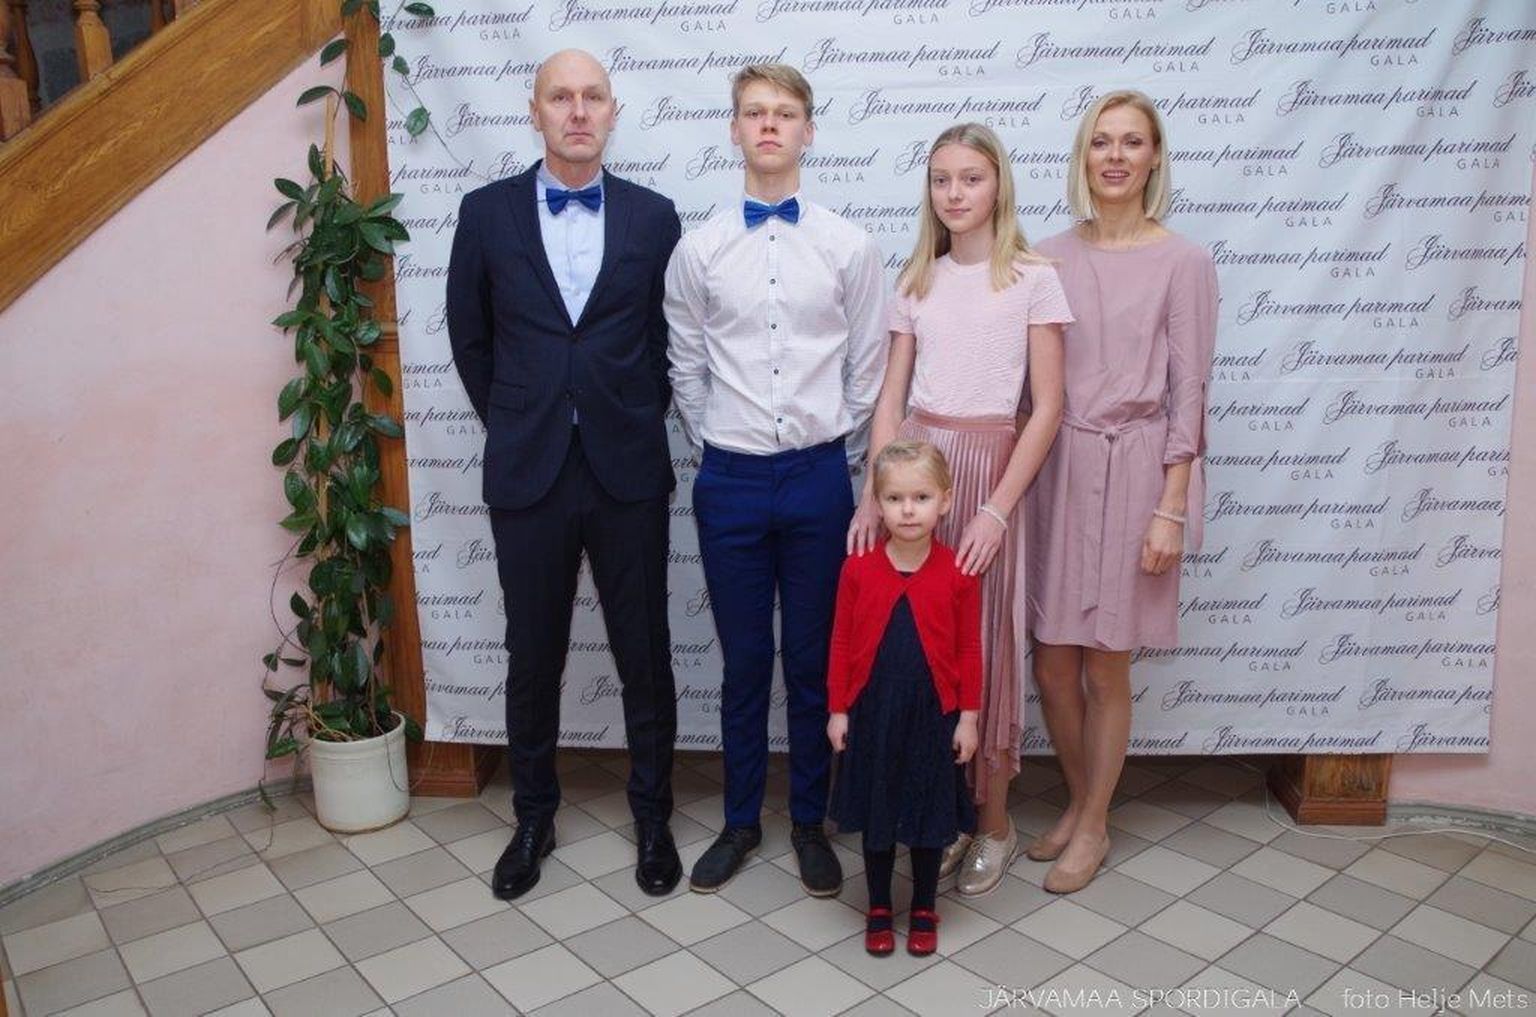 Perekond Tamme kuulutati viimati Järvamaa kõige sportlikumaks perekonnaks.